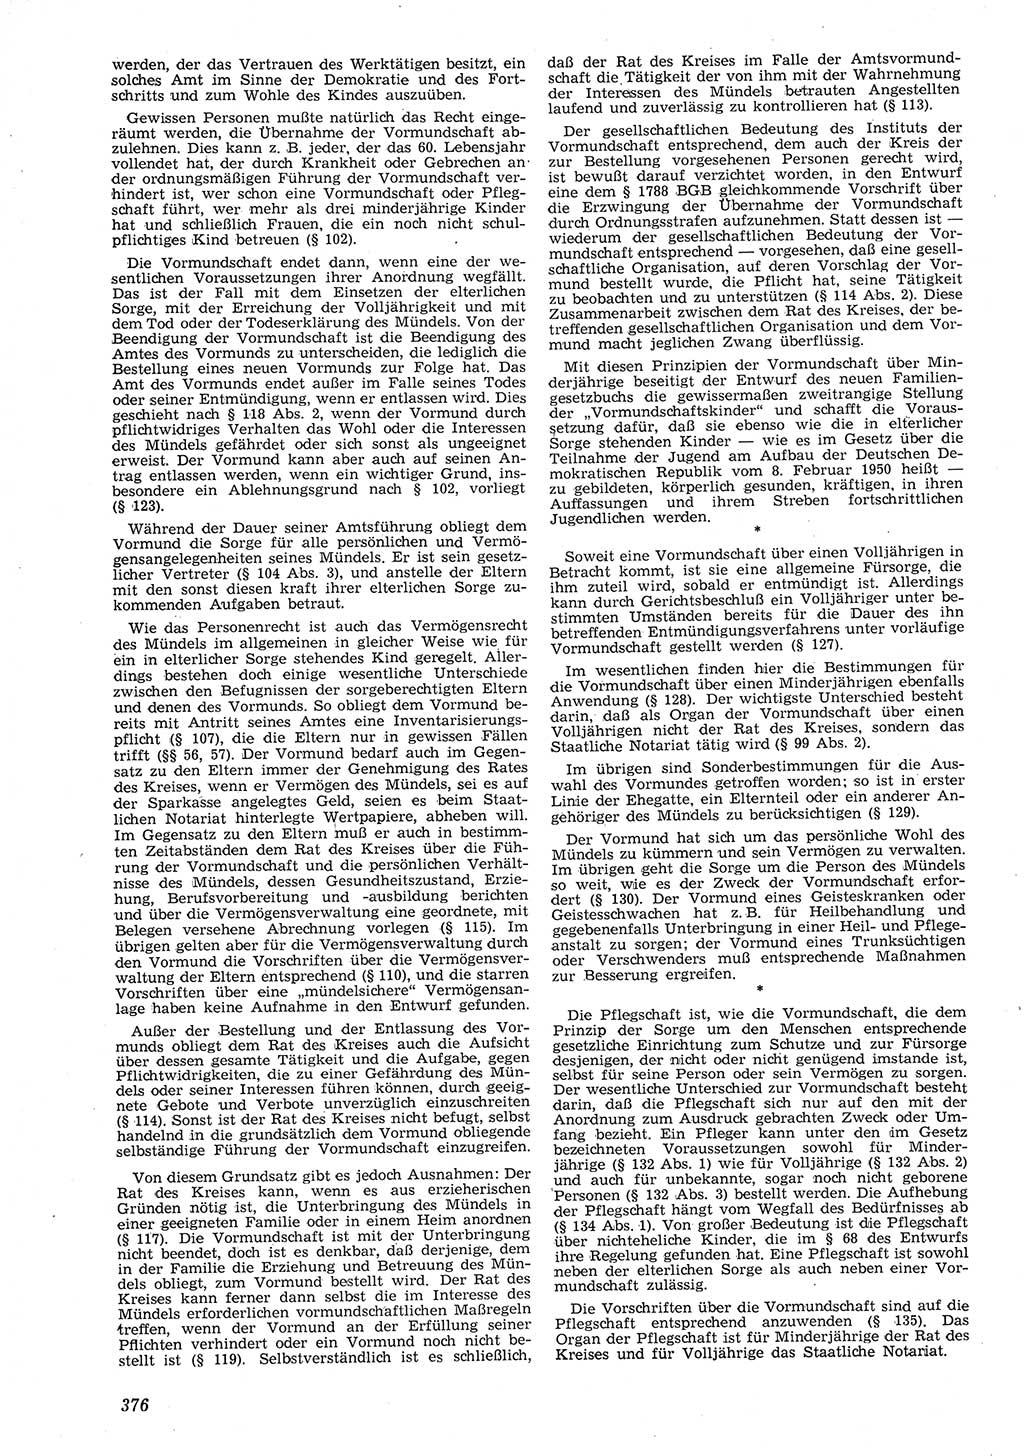 Neue Justiz (NJ), Zeitschrift für Recht und Rechtswissenschaft [Deutsche Demokratische Republik (DDR)], 8. Jahrgang 1954, Seite 376 (NJ DDR 1954, S. 376)